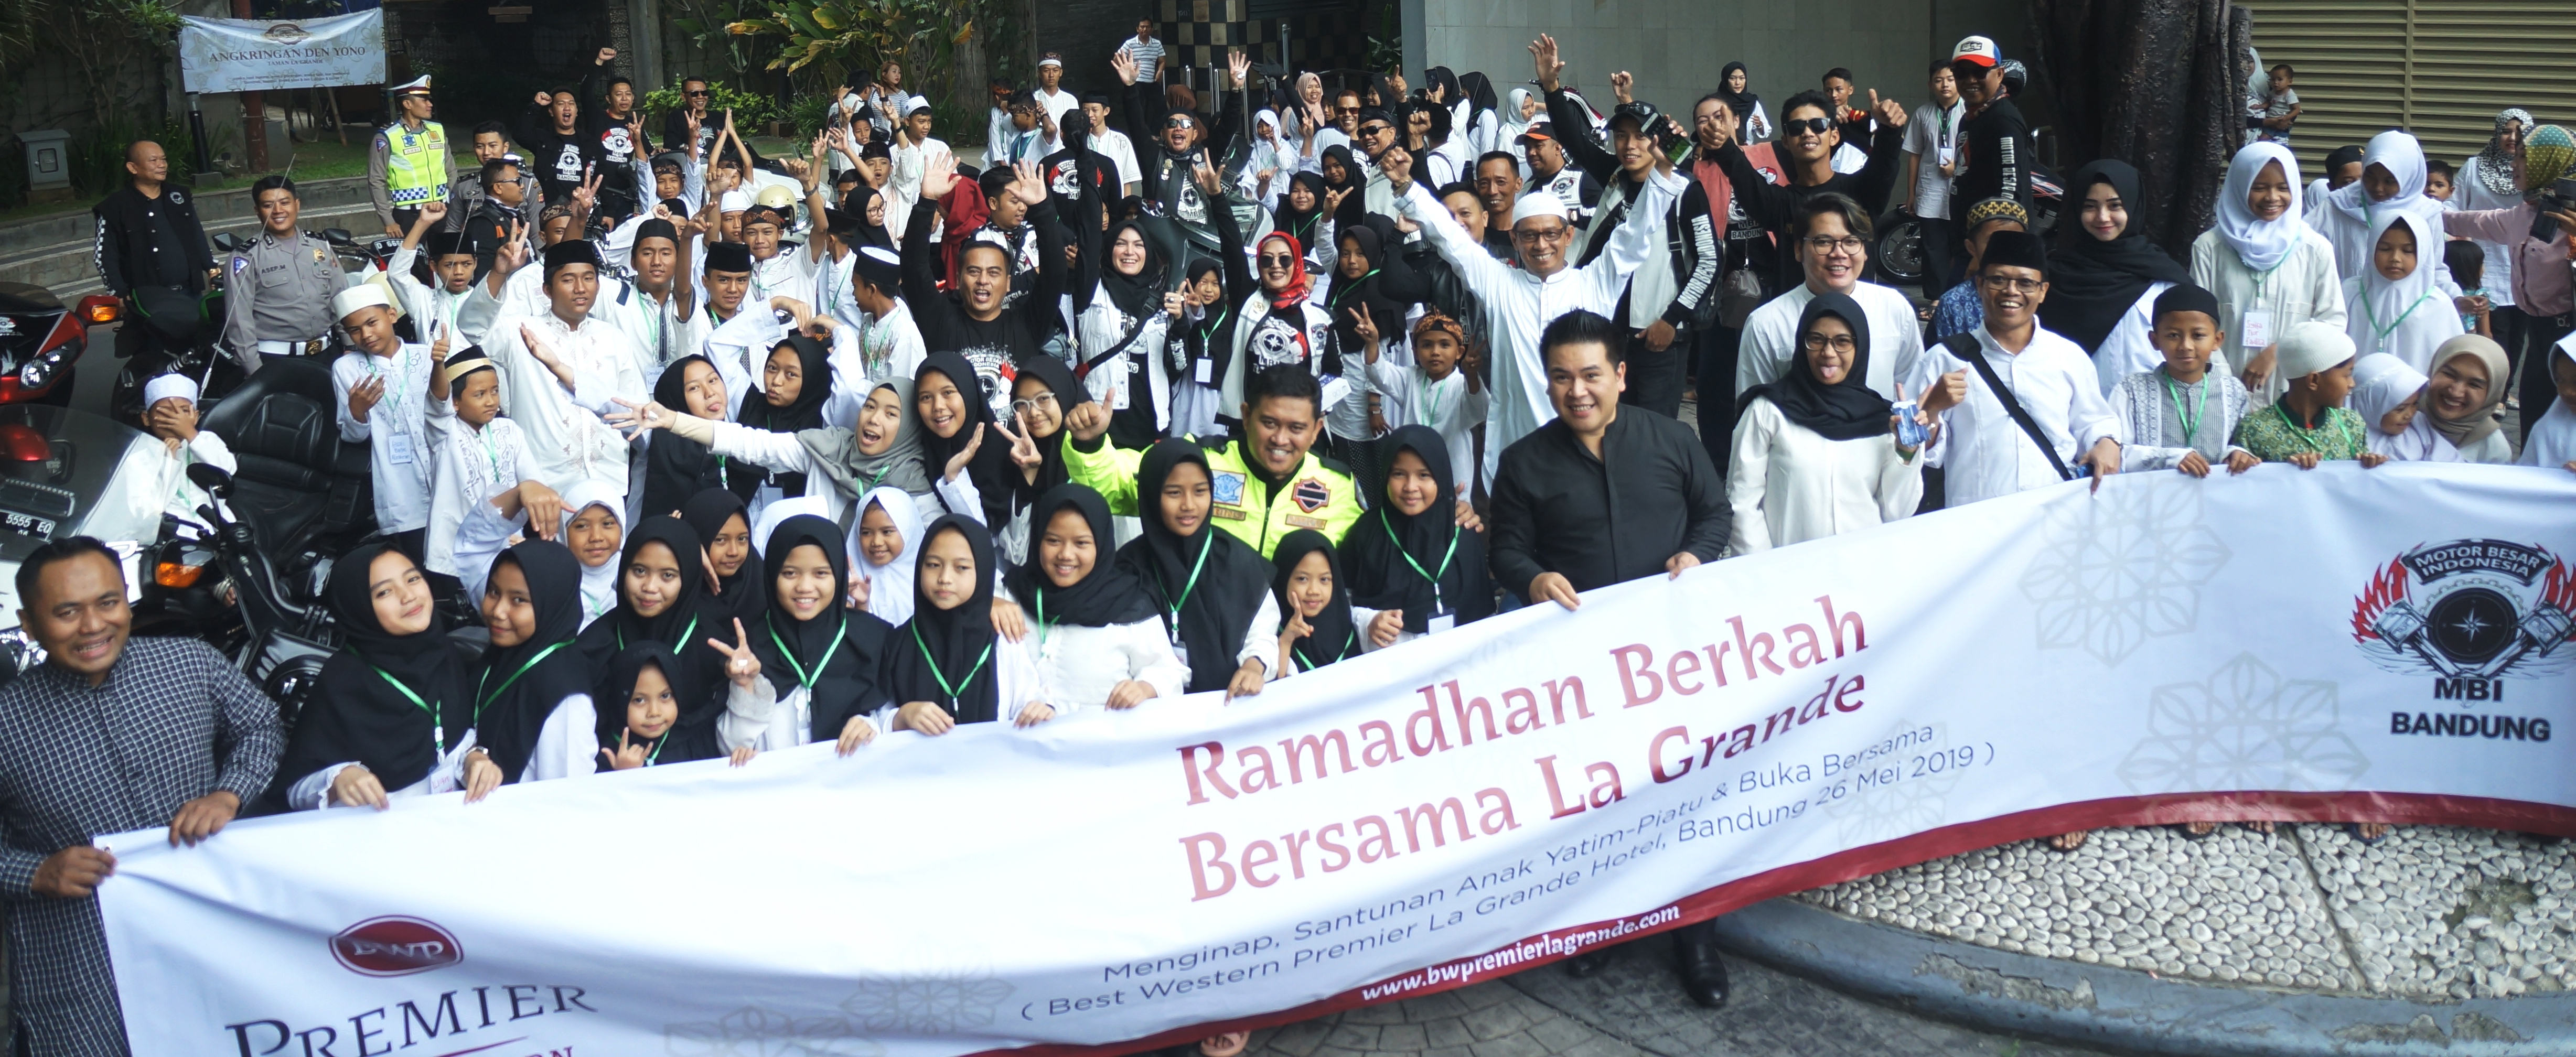 Ramadan Berkah Bersama Best Western Premier La Grande Bandung